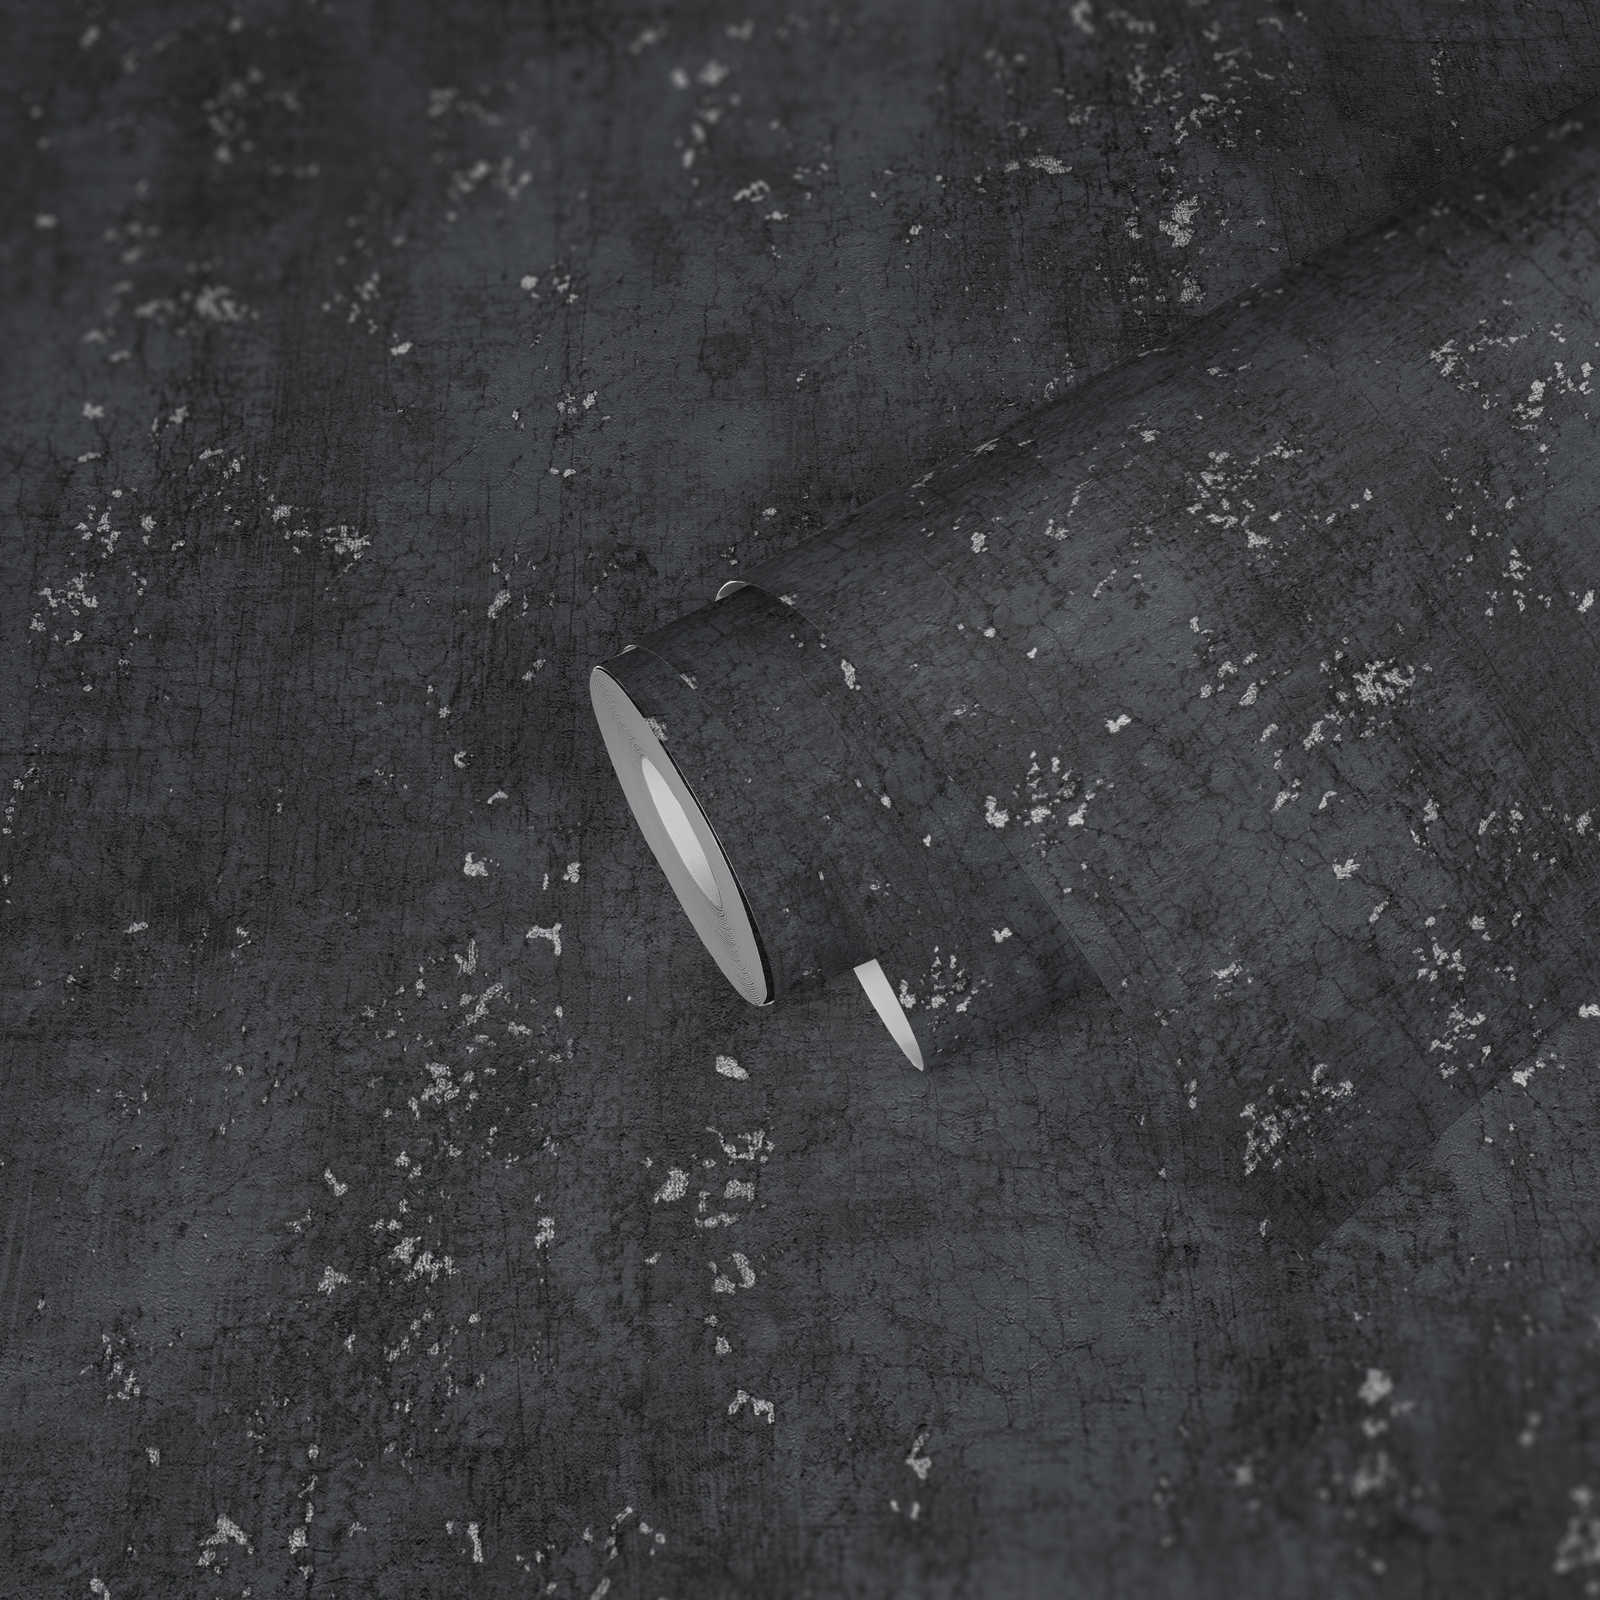             Antraciet behang gipslook met zilveren craquelé - grijs, metallic, zwart
        